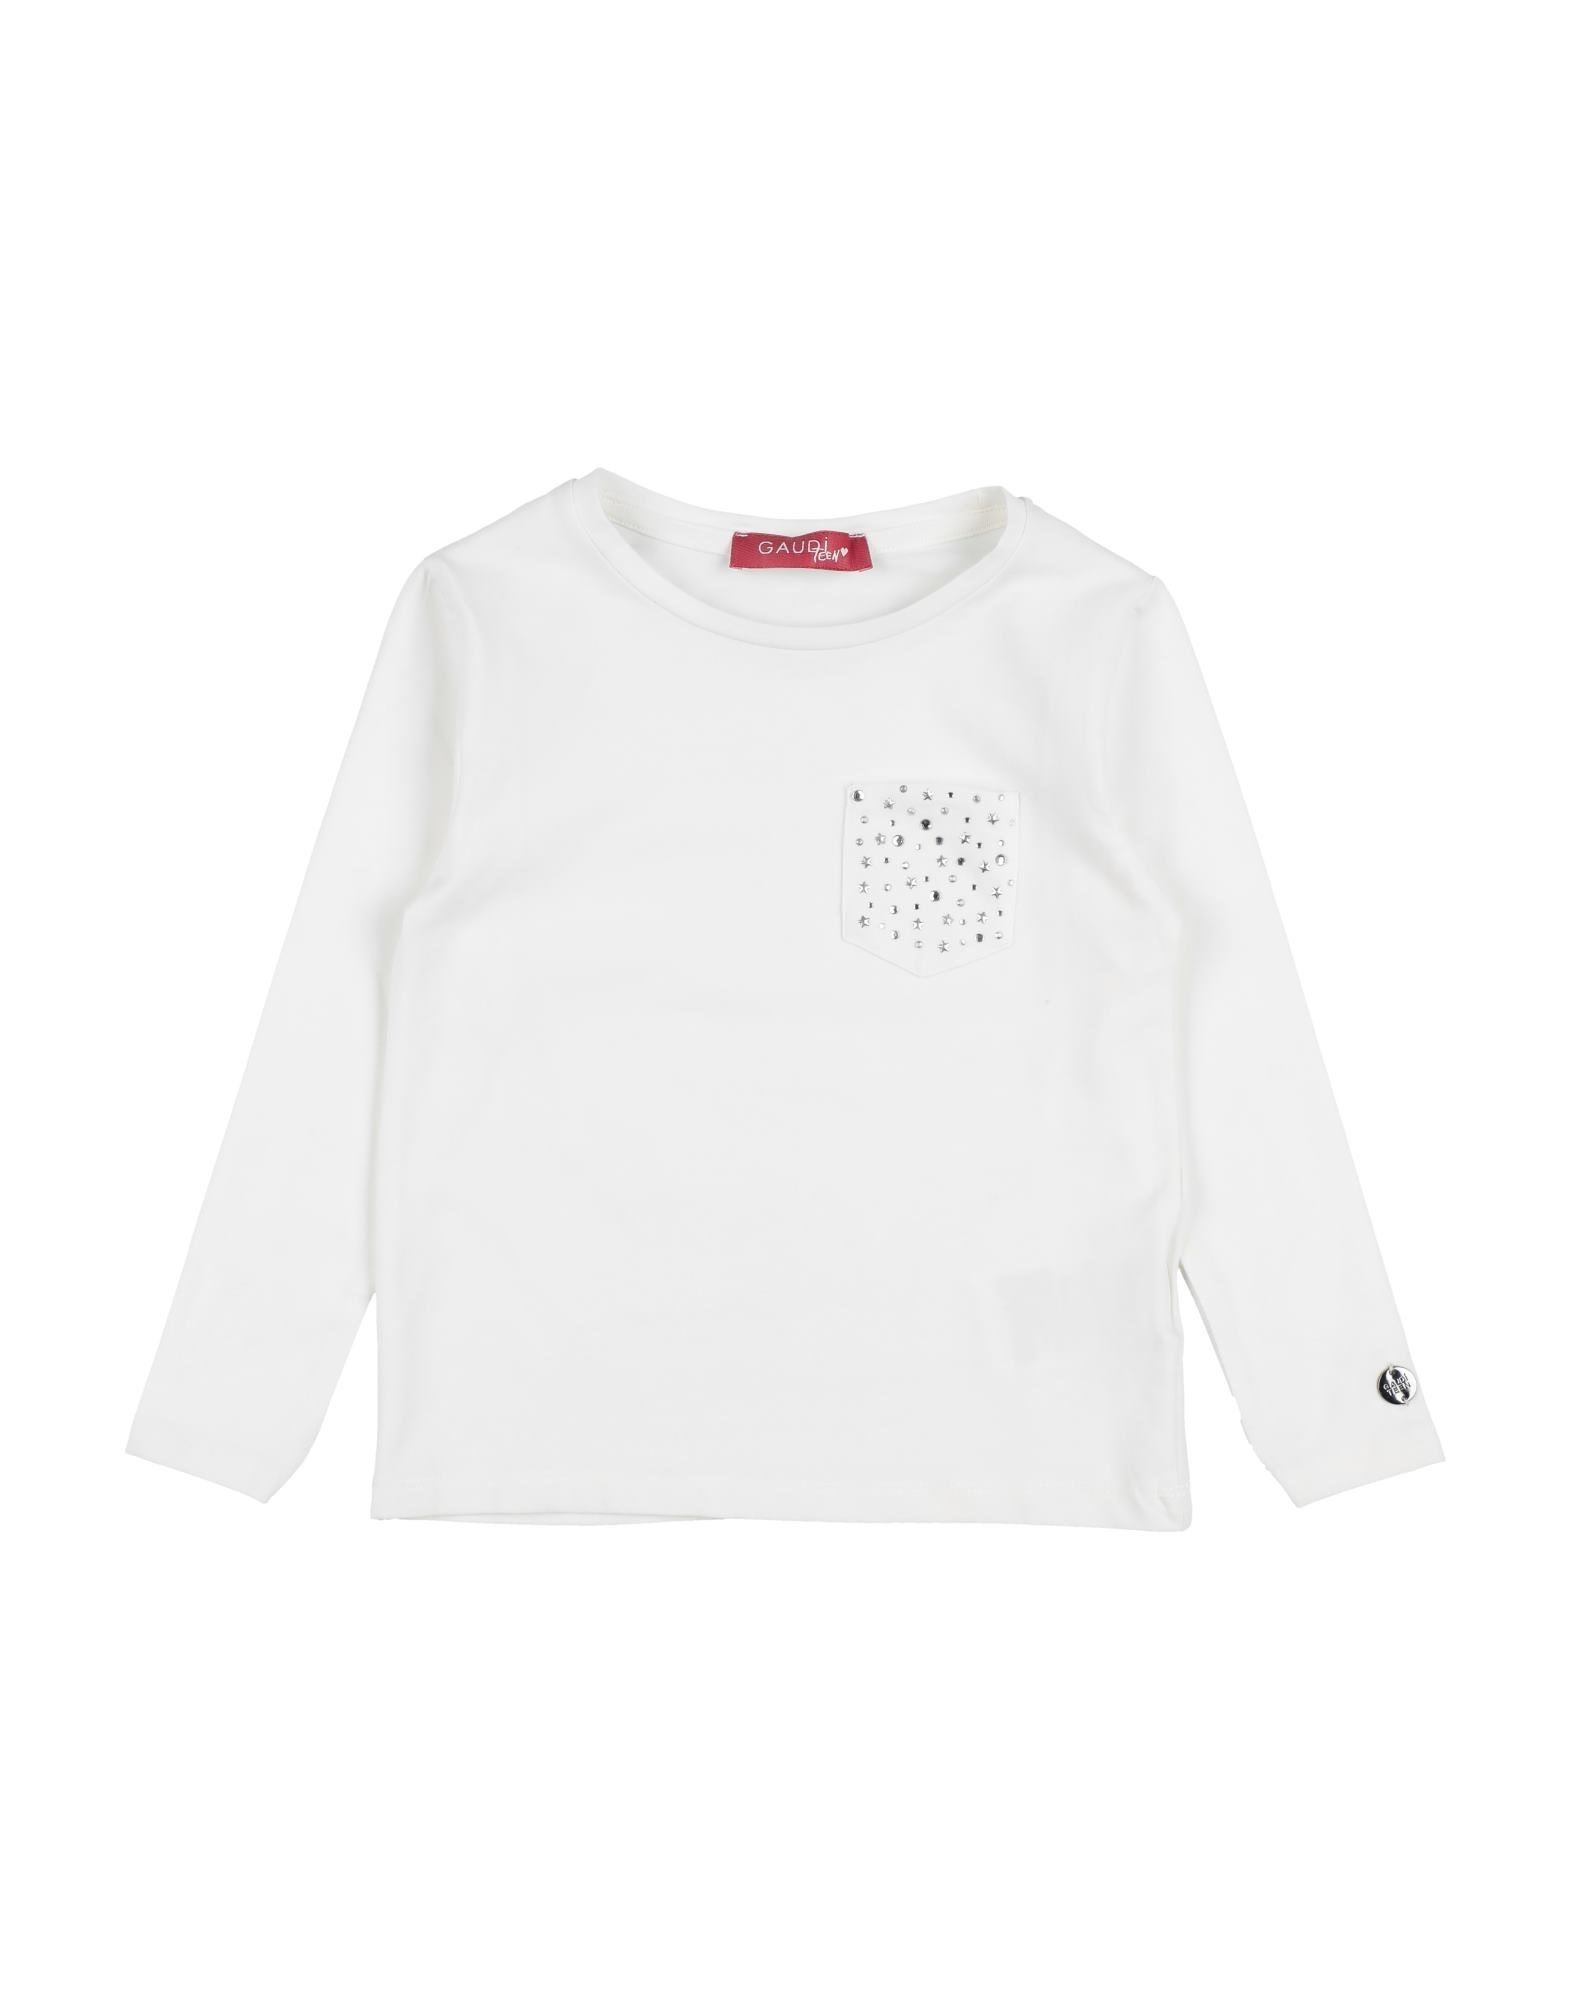 Gaudì Kids'  Toddler Girl T-shirt White Size 6 Cotton, Elastane